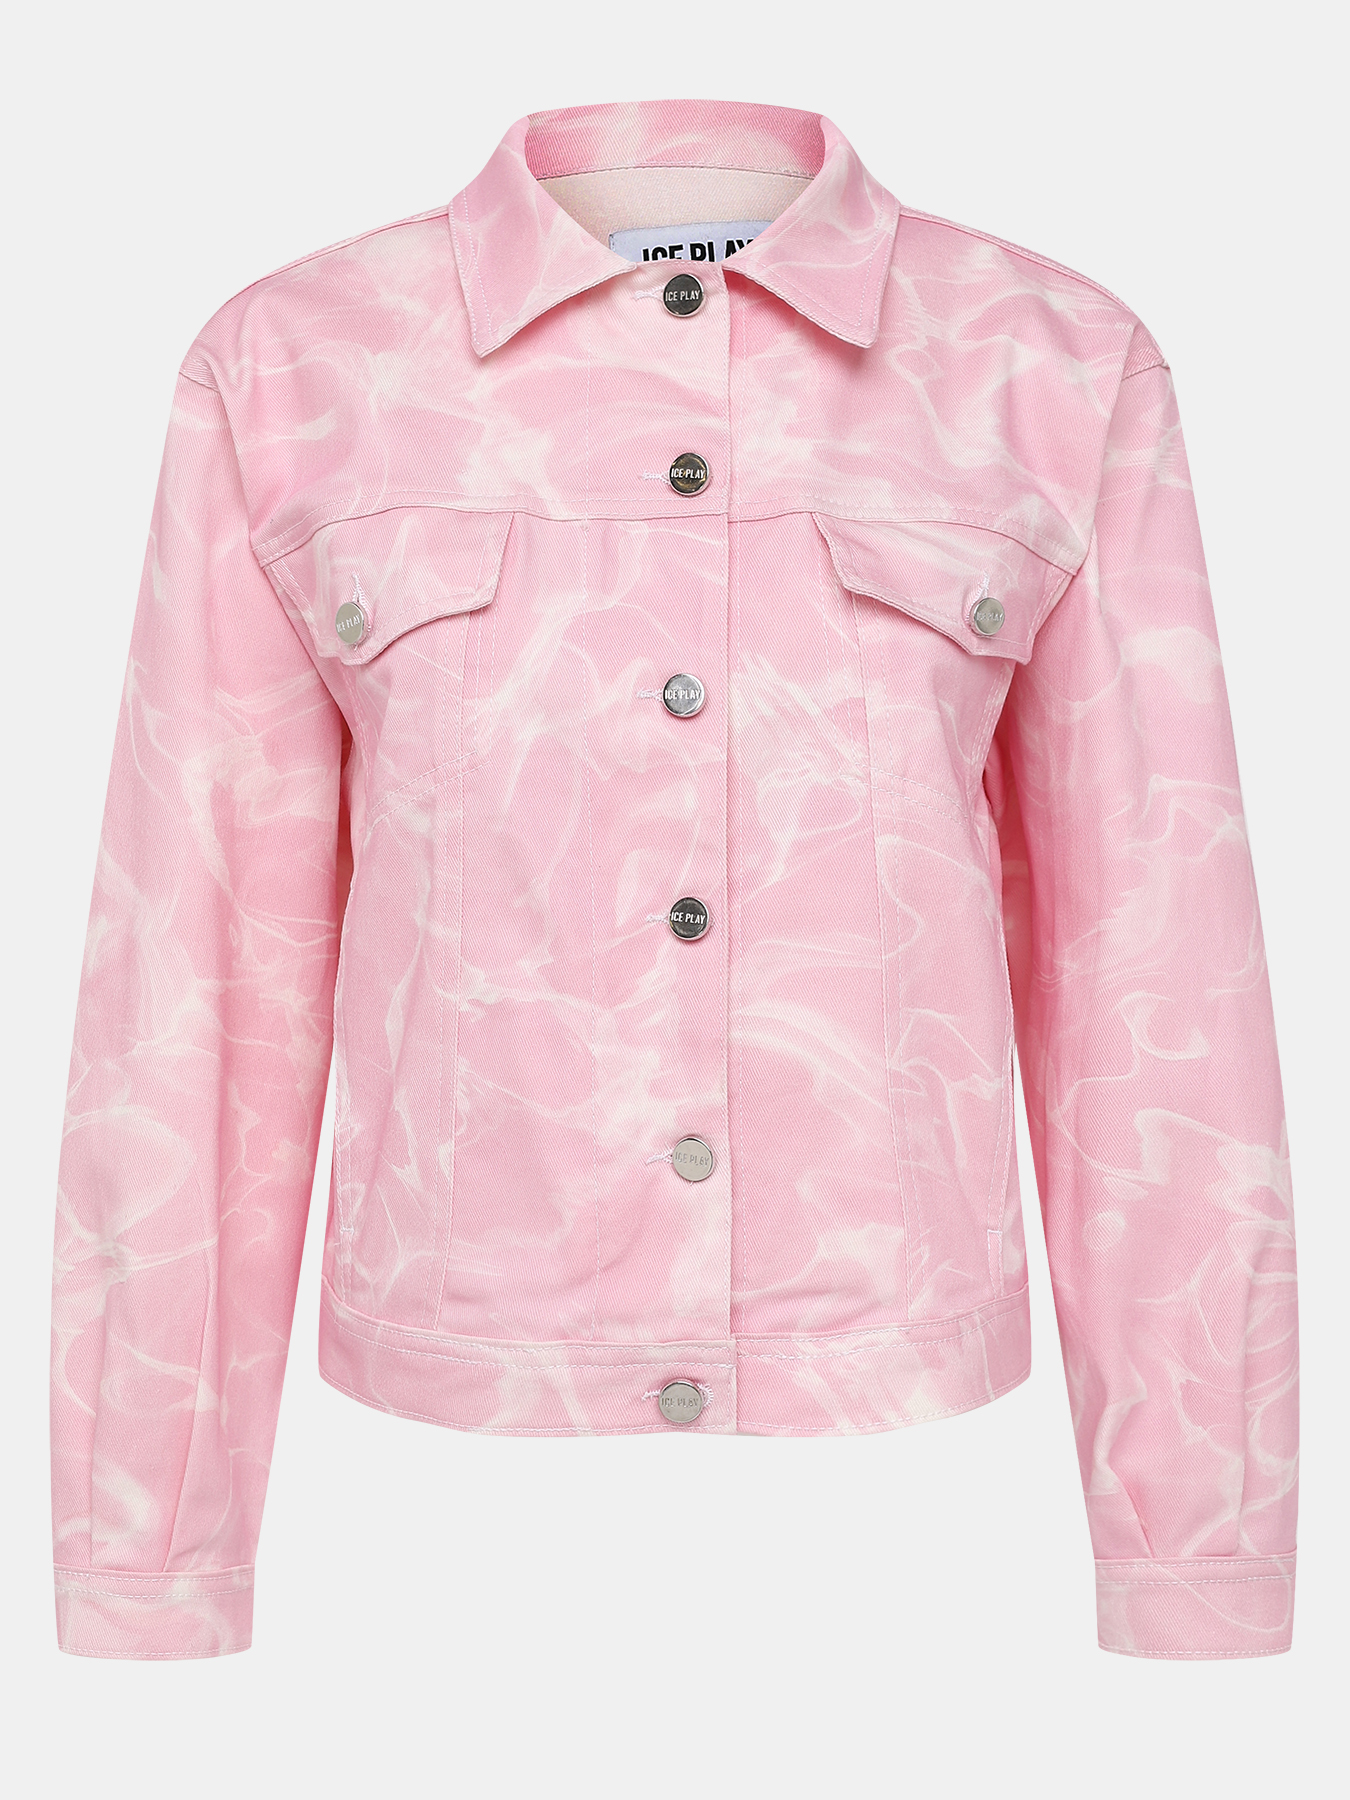 Джинсовая куртка Ice Play 380890-021, цвет мультиколор, размер 42